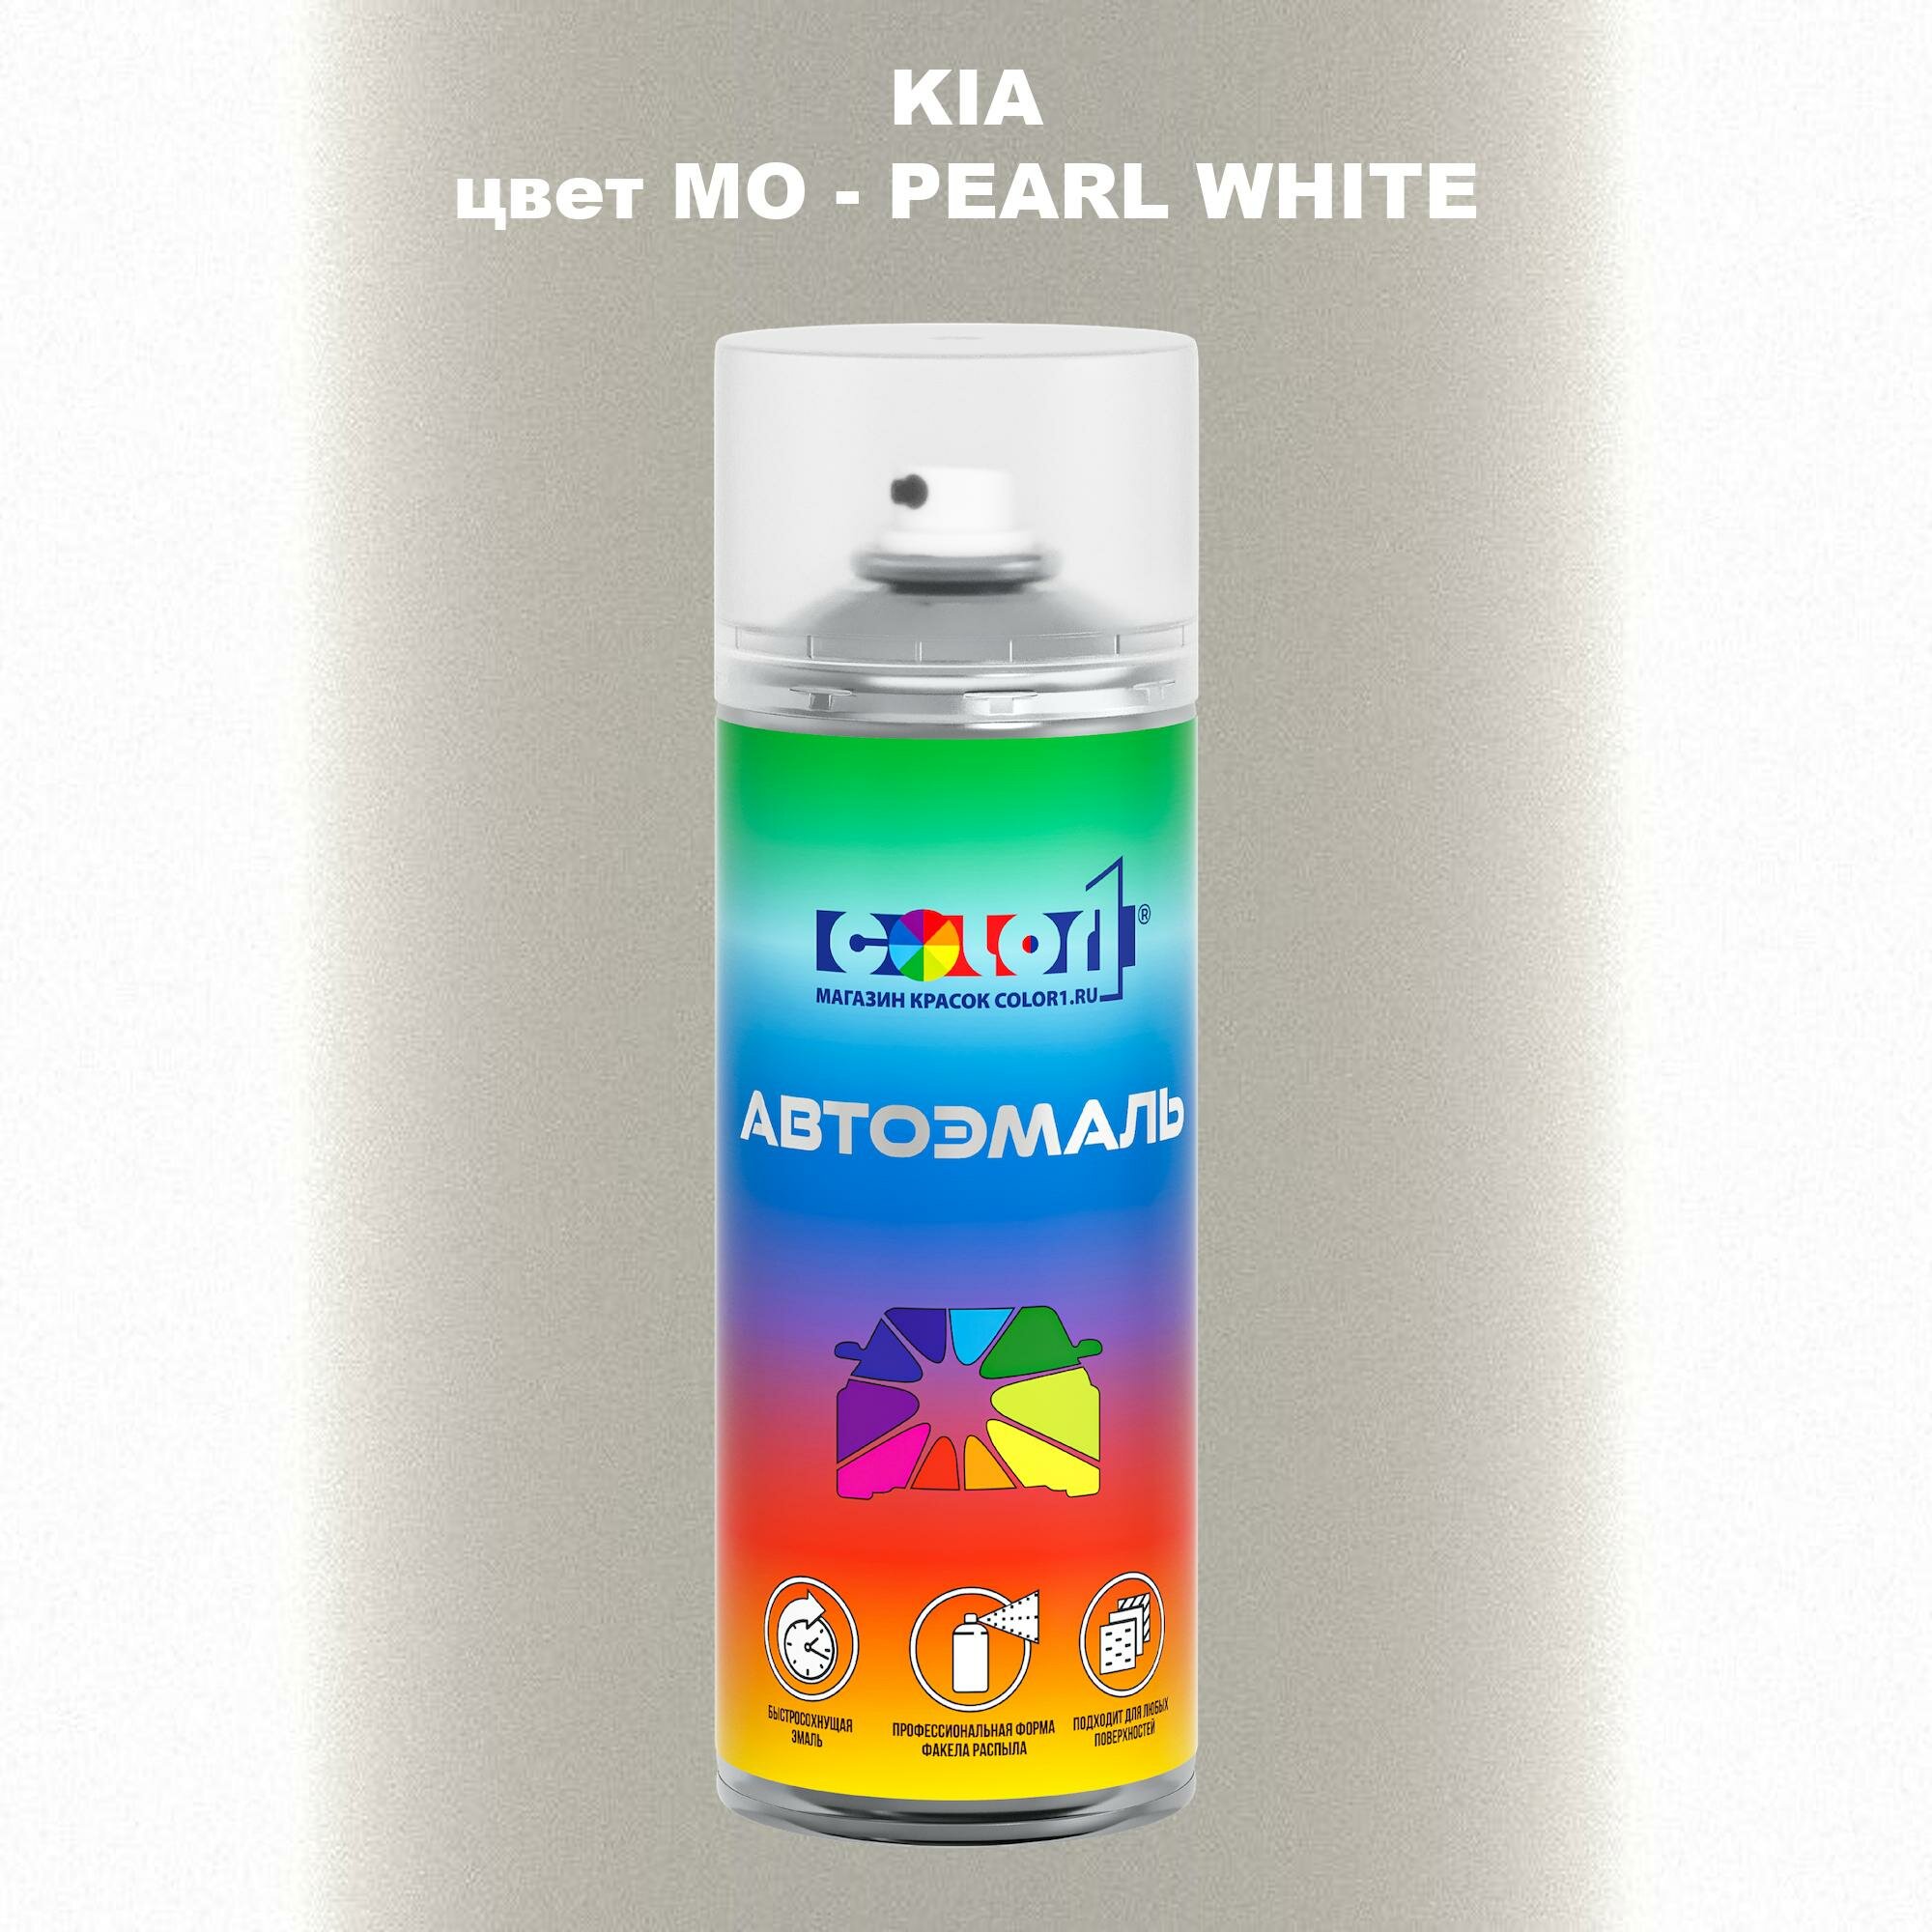 Аэрозольная краска COLOR1 для KIA, цвет MO - PEARL WHITE